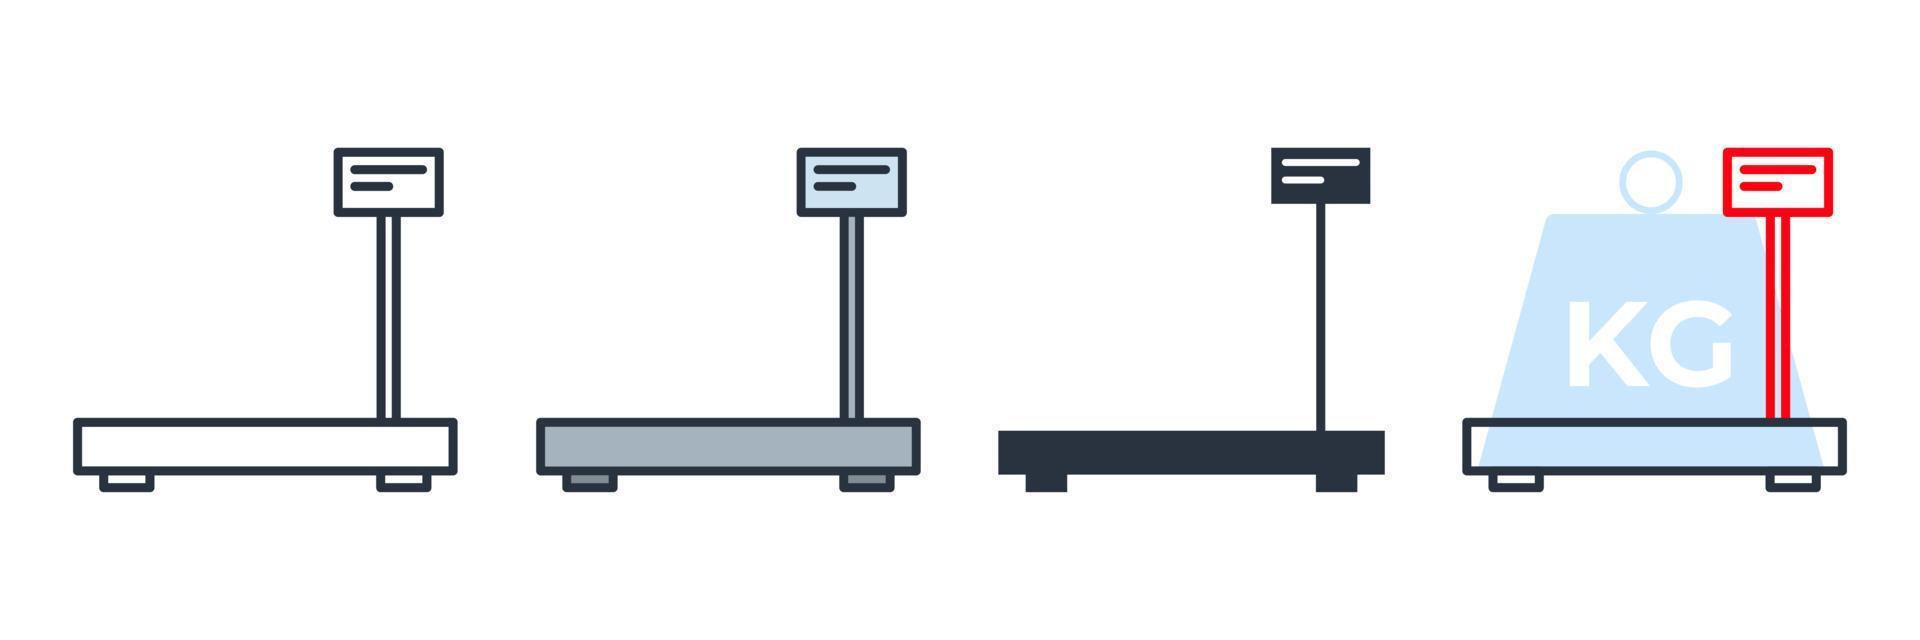 Ilustración de vector de logotipo de icono de escala industrial. plantilla de símbolo de escala digital de almacén para la colección de diseño gráfico y web